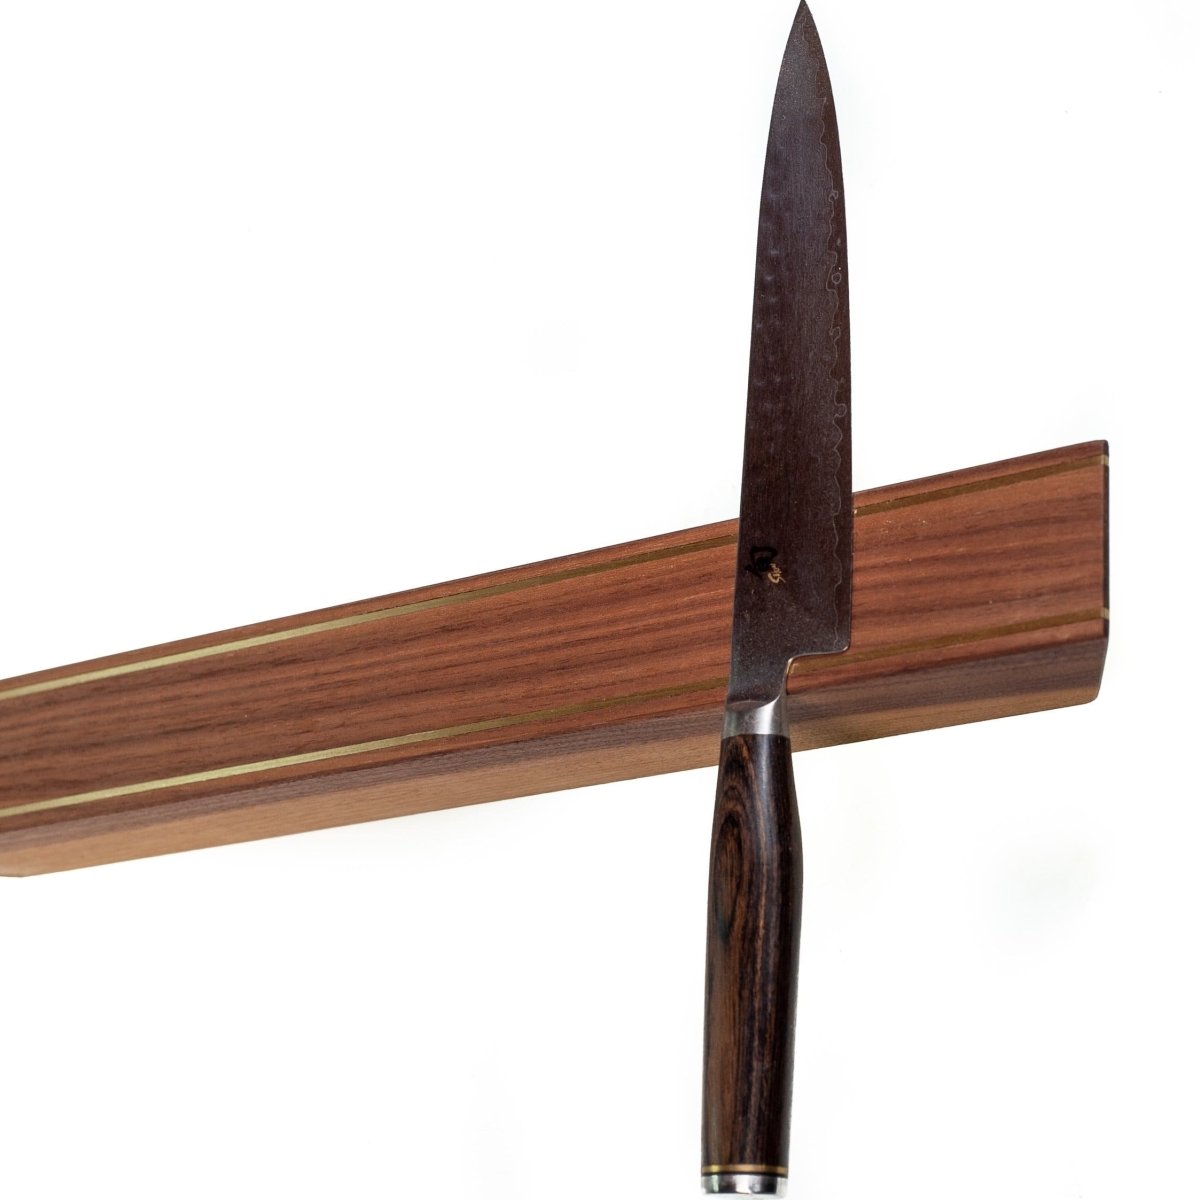 Rune-Jakobsen Woodworks 'Knifeboard Rails' dyb knivmagnet_2 by Rune-Jakobsen Design